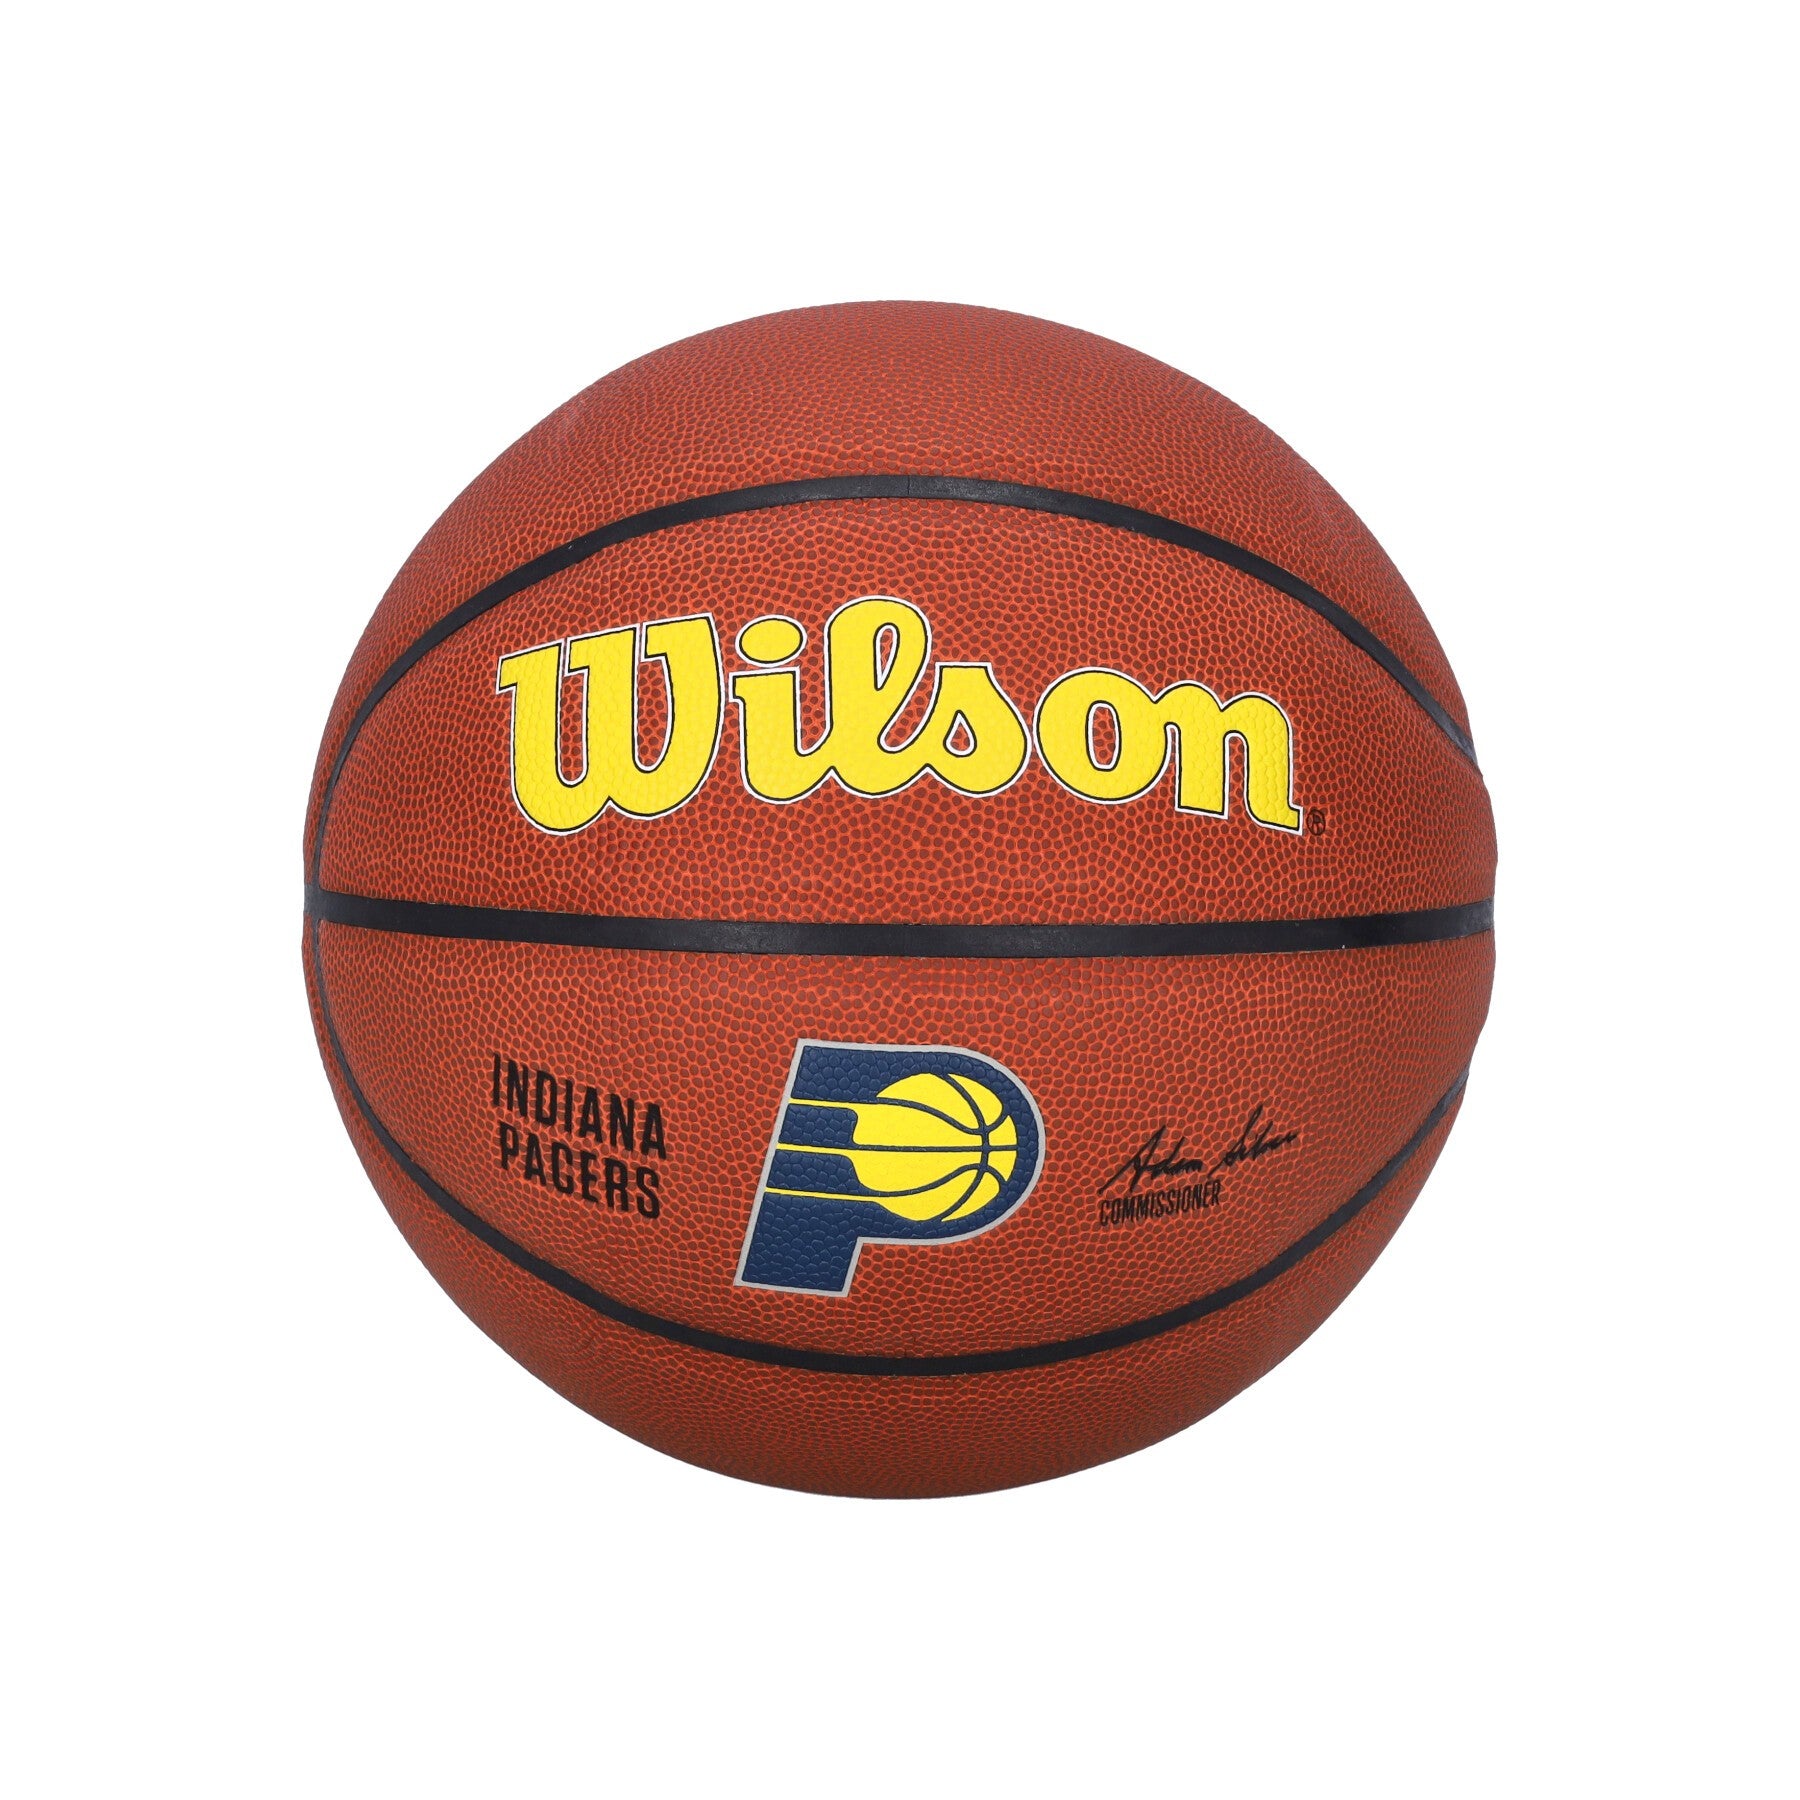 Herren NBA Team Alliance Basketball Größe 7 Indpac Original Teamfarben